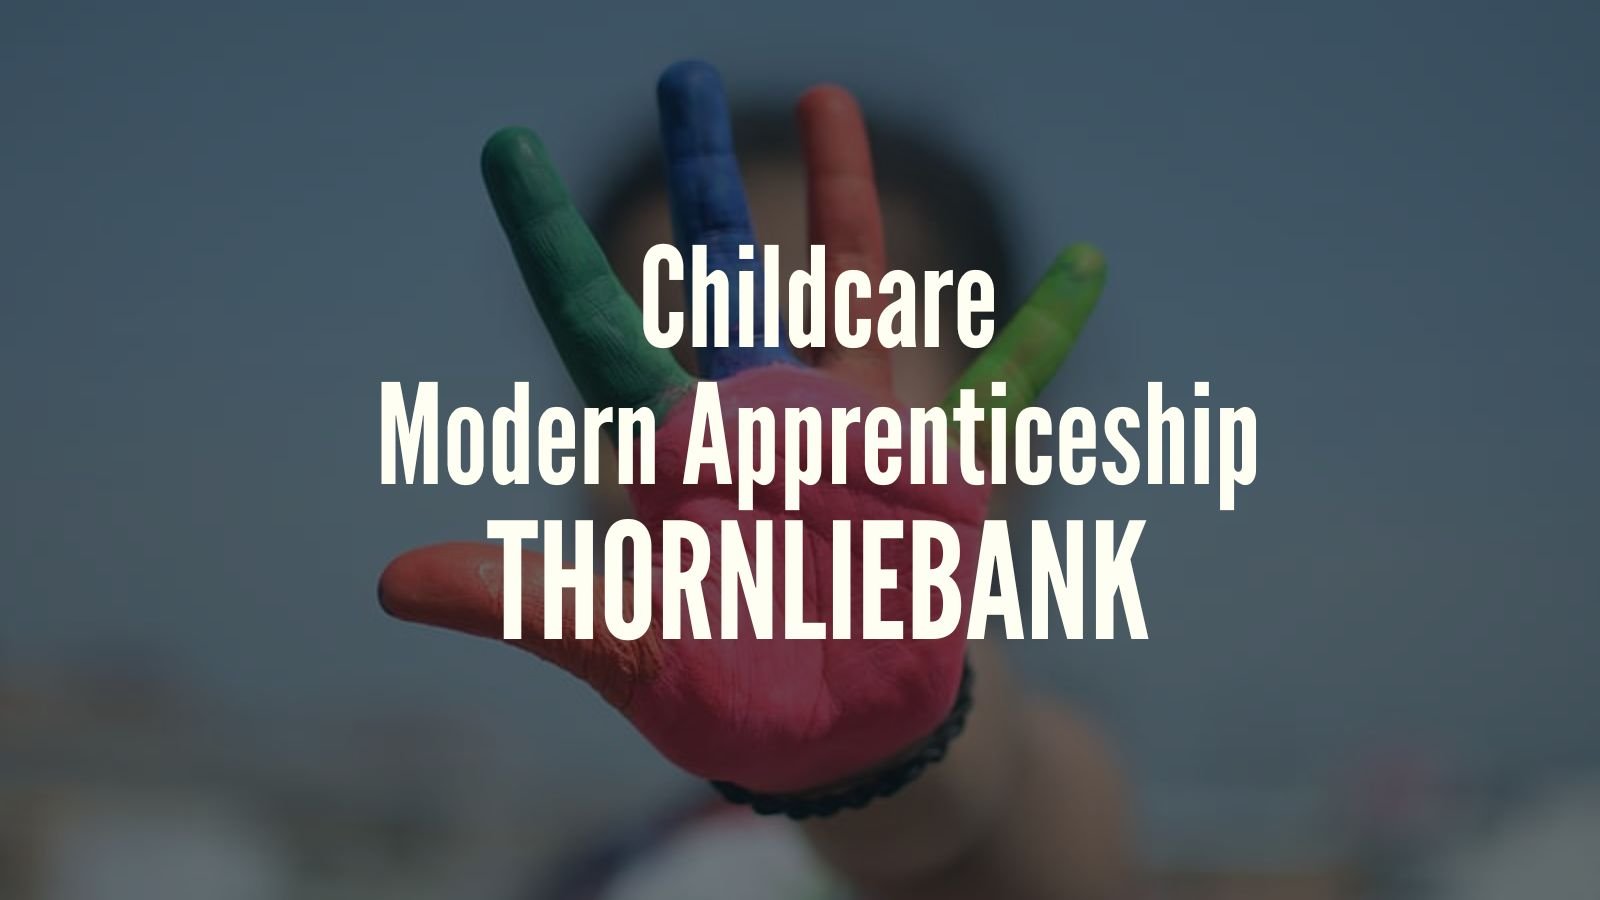 Childcare Modern Apprenticeship Thornliebank